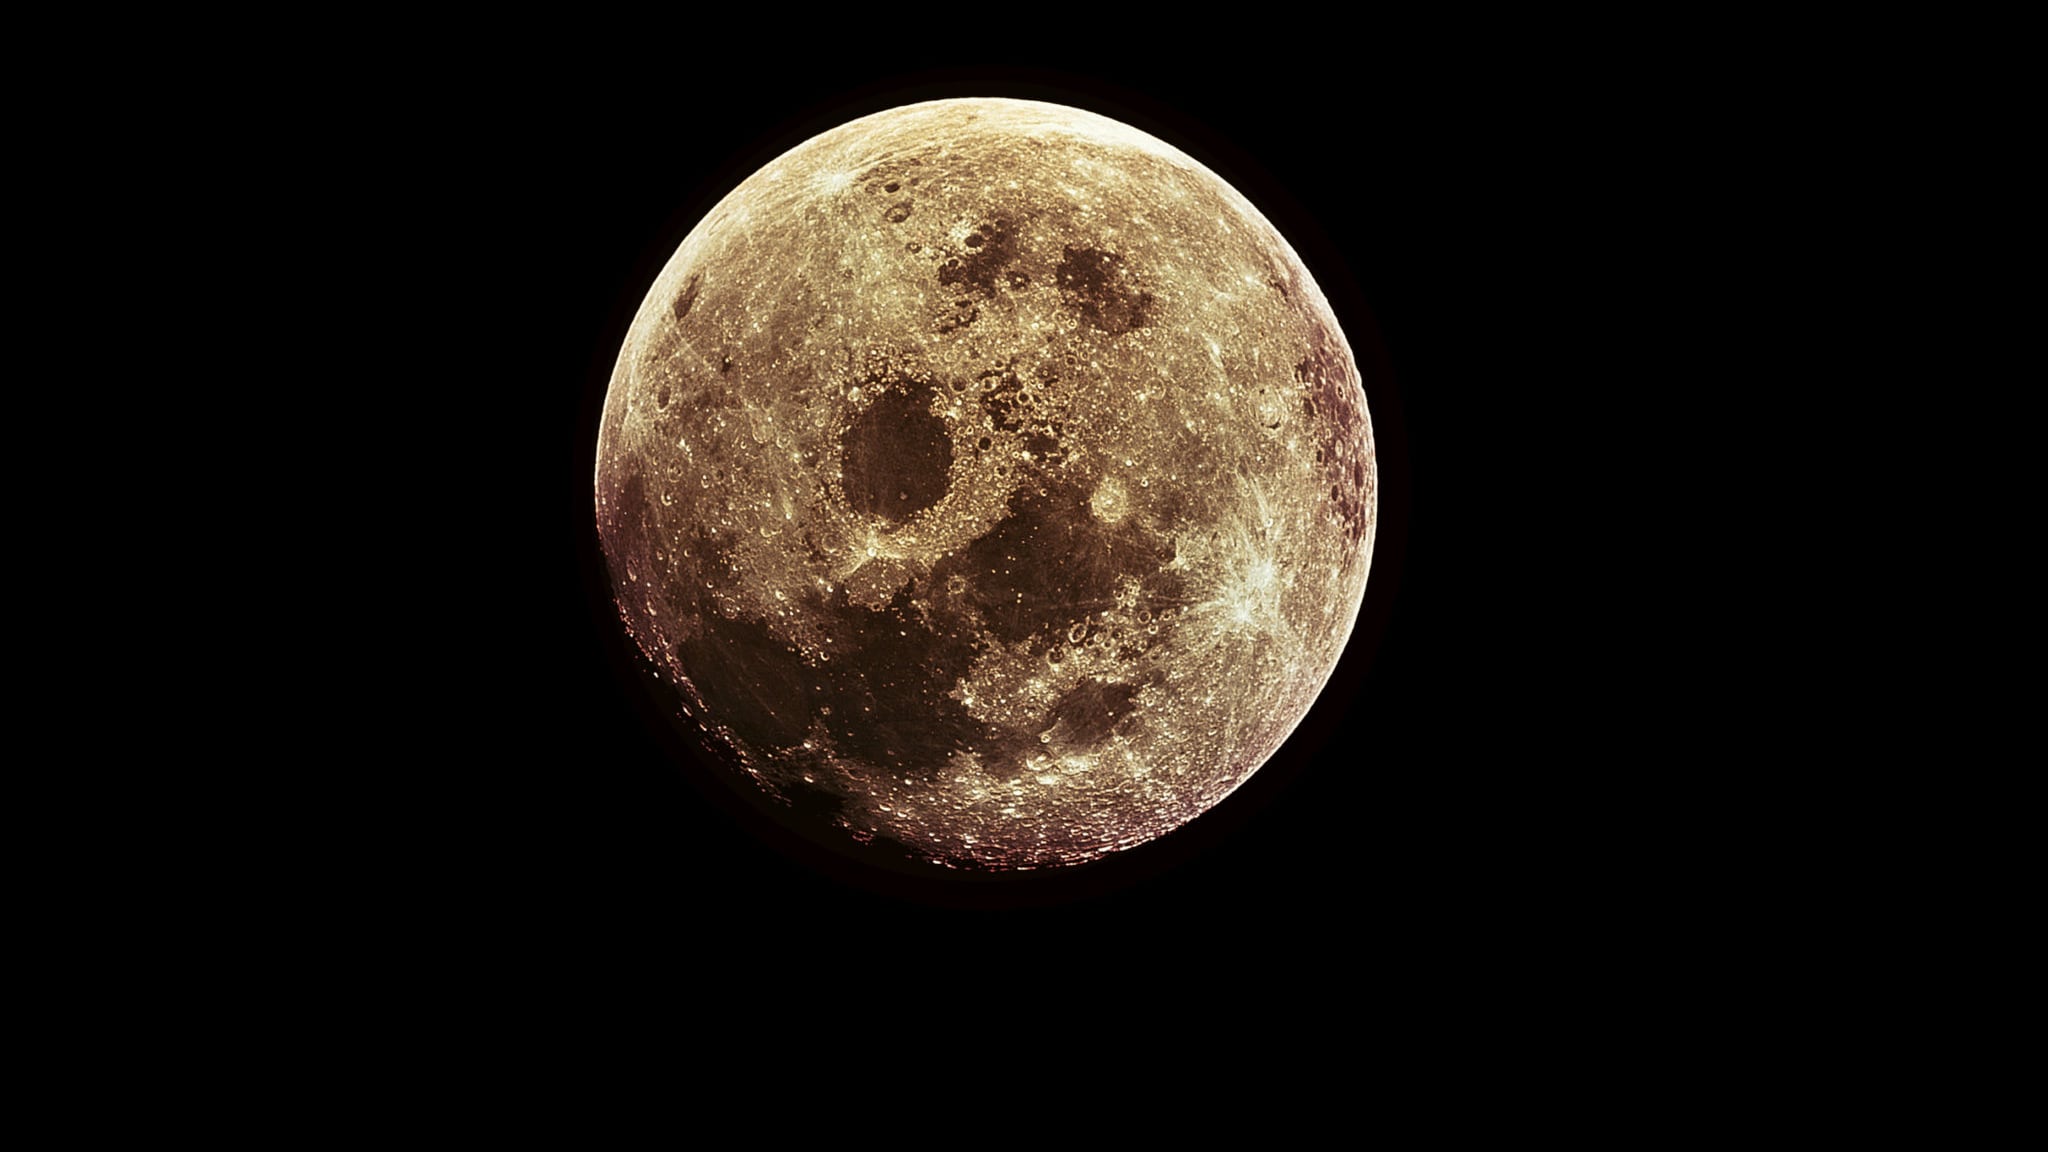 Un día en la Luna dura unos 15 días terrestres, alcanzando promedios de 127 °C. Y una noche dura unos 15 días terrestres, con promedios de temperatura de -173 °C.